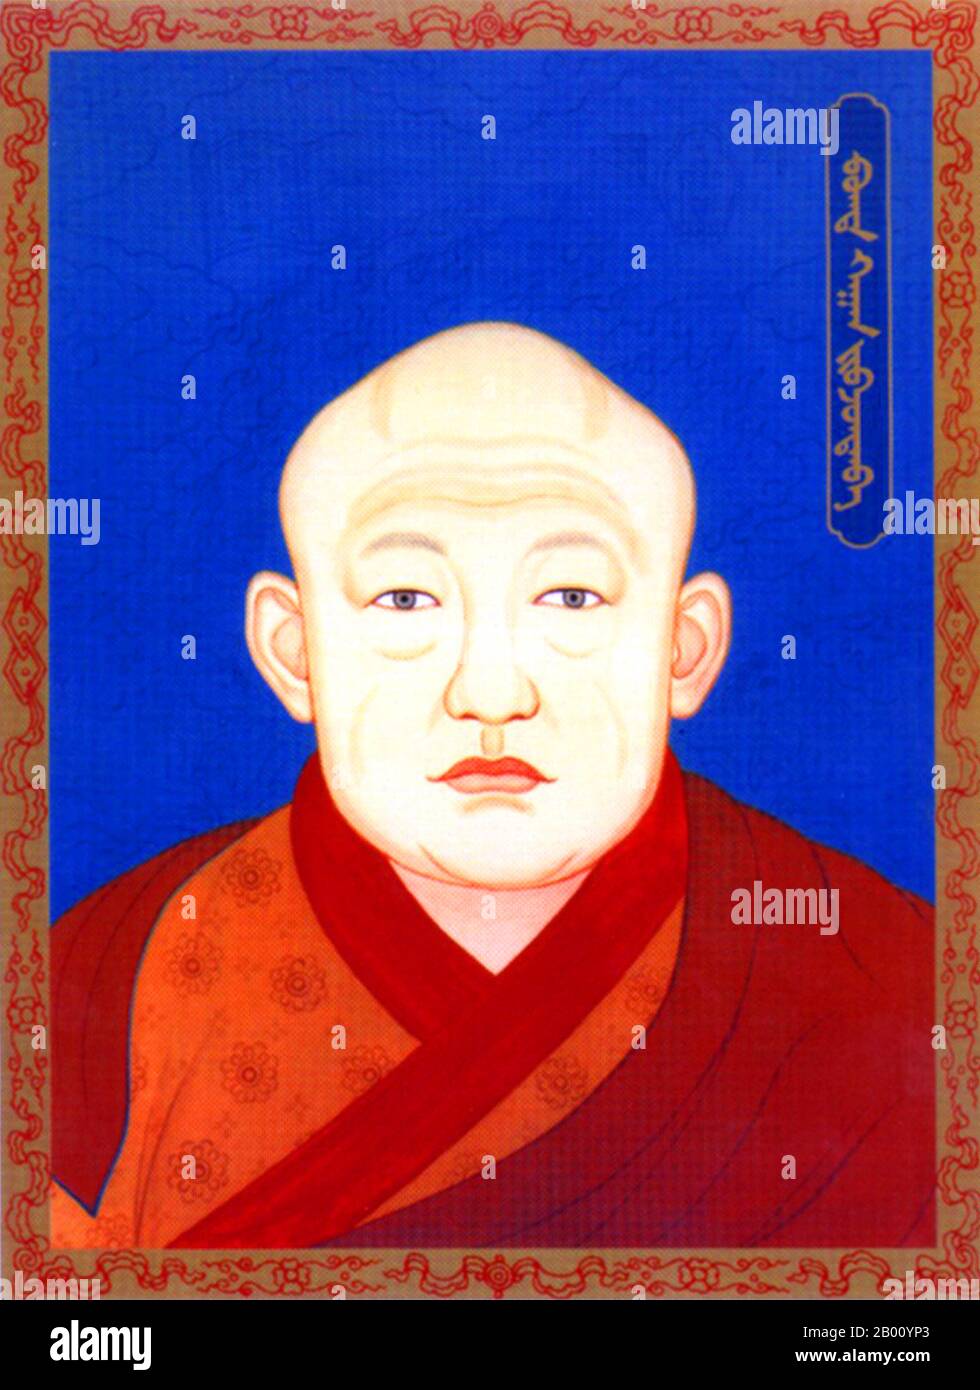 Mongolei: Der achte Jebtsundamba Khutugtu Bogd Khan, letzter monarchischer Herrscher der Mongolei, 20th. Jahrhundert. Der Bogd Khan (c. 1869. - 20. Mai 1924) war gleichzeitig das religiöse und weltliche Oberhaupt des mongolischen Staates bis zum 1920s. IKH Huree, wie Ulan Bator damals bekannt war, war der Sitz des bedeutendsten lebenden Buddha der Mongolei (der Jebtsundamba Khutuktu, auch bekannt als Bogdo Gegen und später als Bogd Khan), der nach dem Dalai Lama und dem Panchen Lama den dritten Platz in der lamaistisch-buddhistischen kirchlichen Hierarchie belegte. Stockfoto